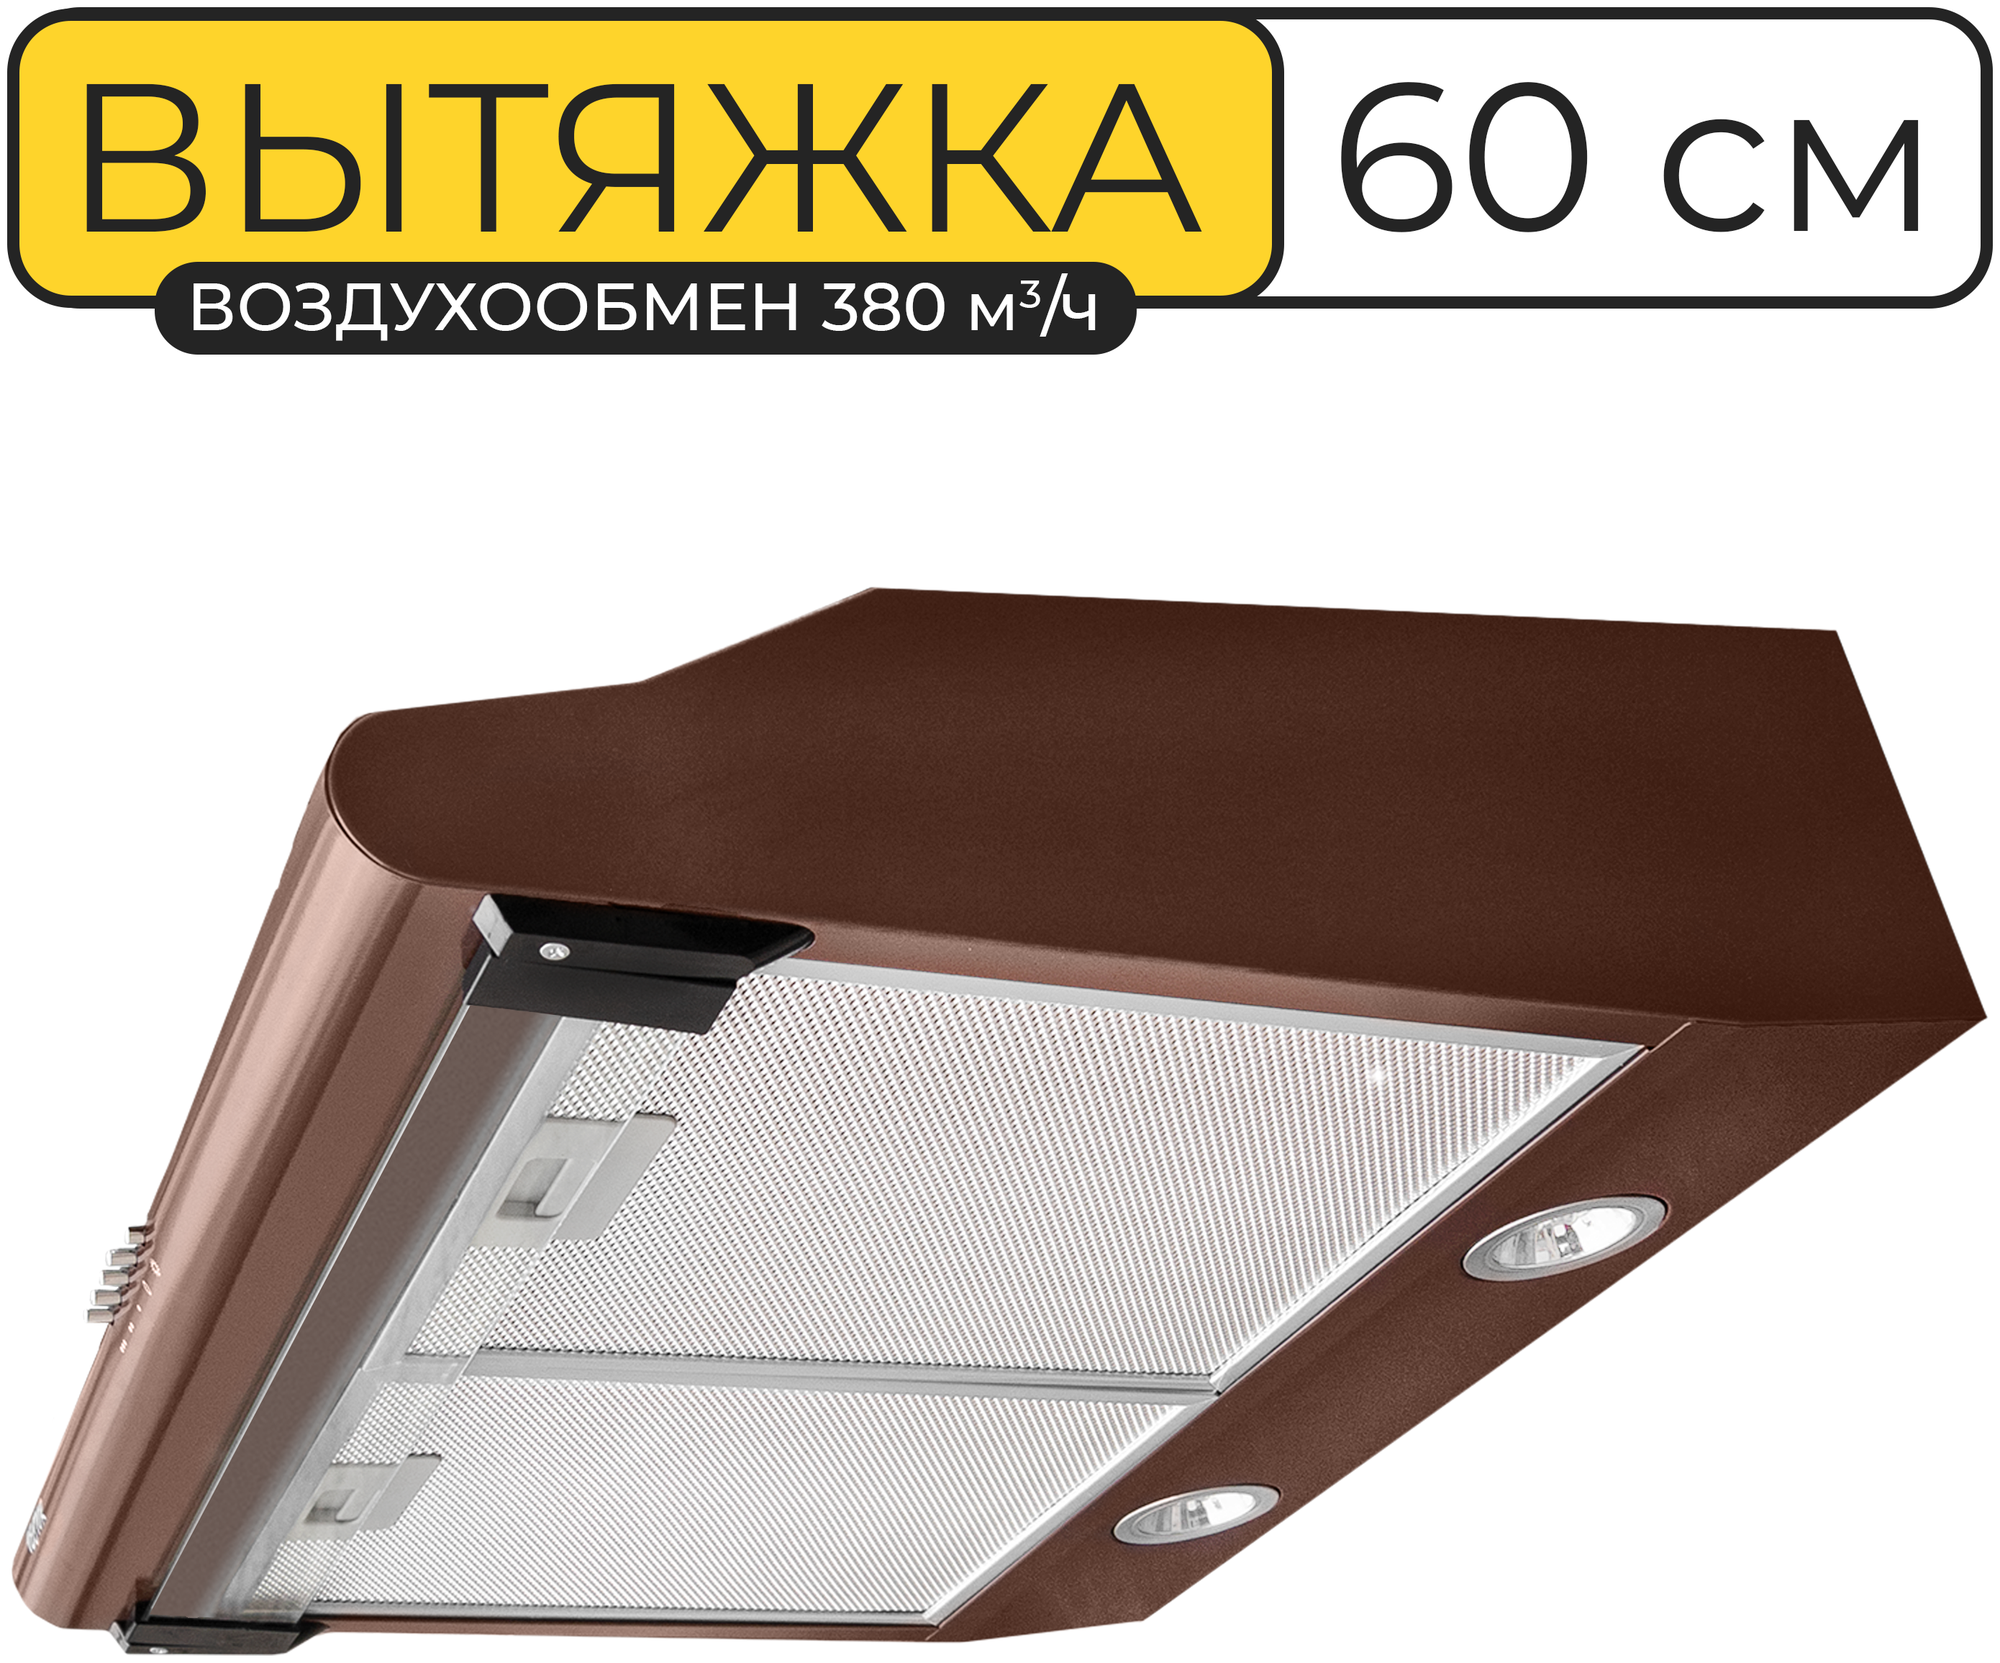 Вытяжка кухонная 60 см, Vector V 3060, 380 куб.м/ч, 103 Вт, угольный фильтр, коричневая - фотография № 1